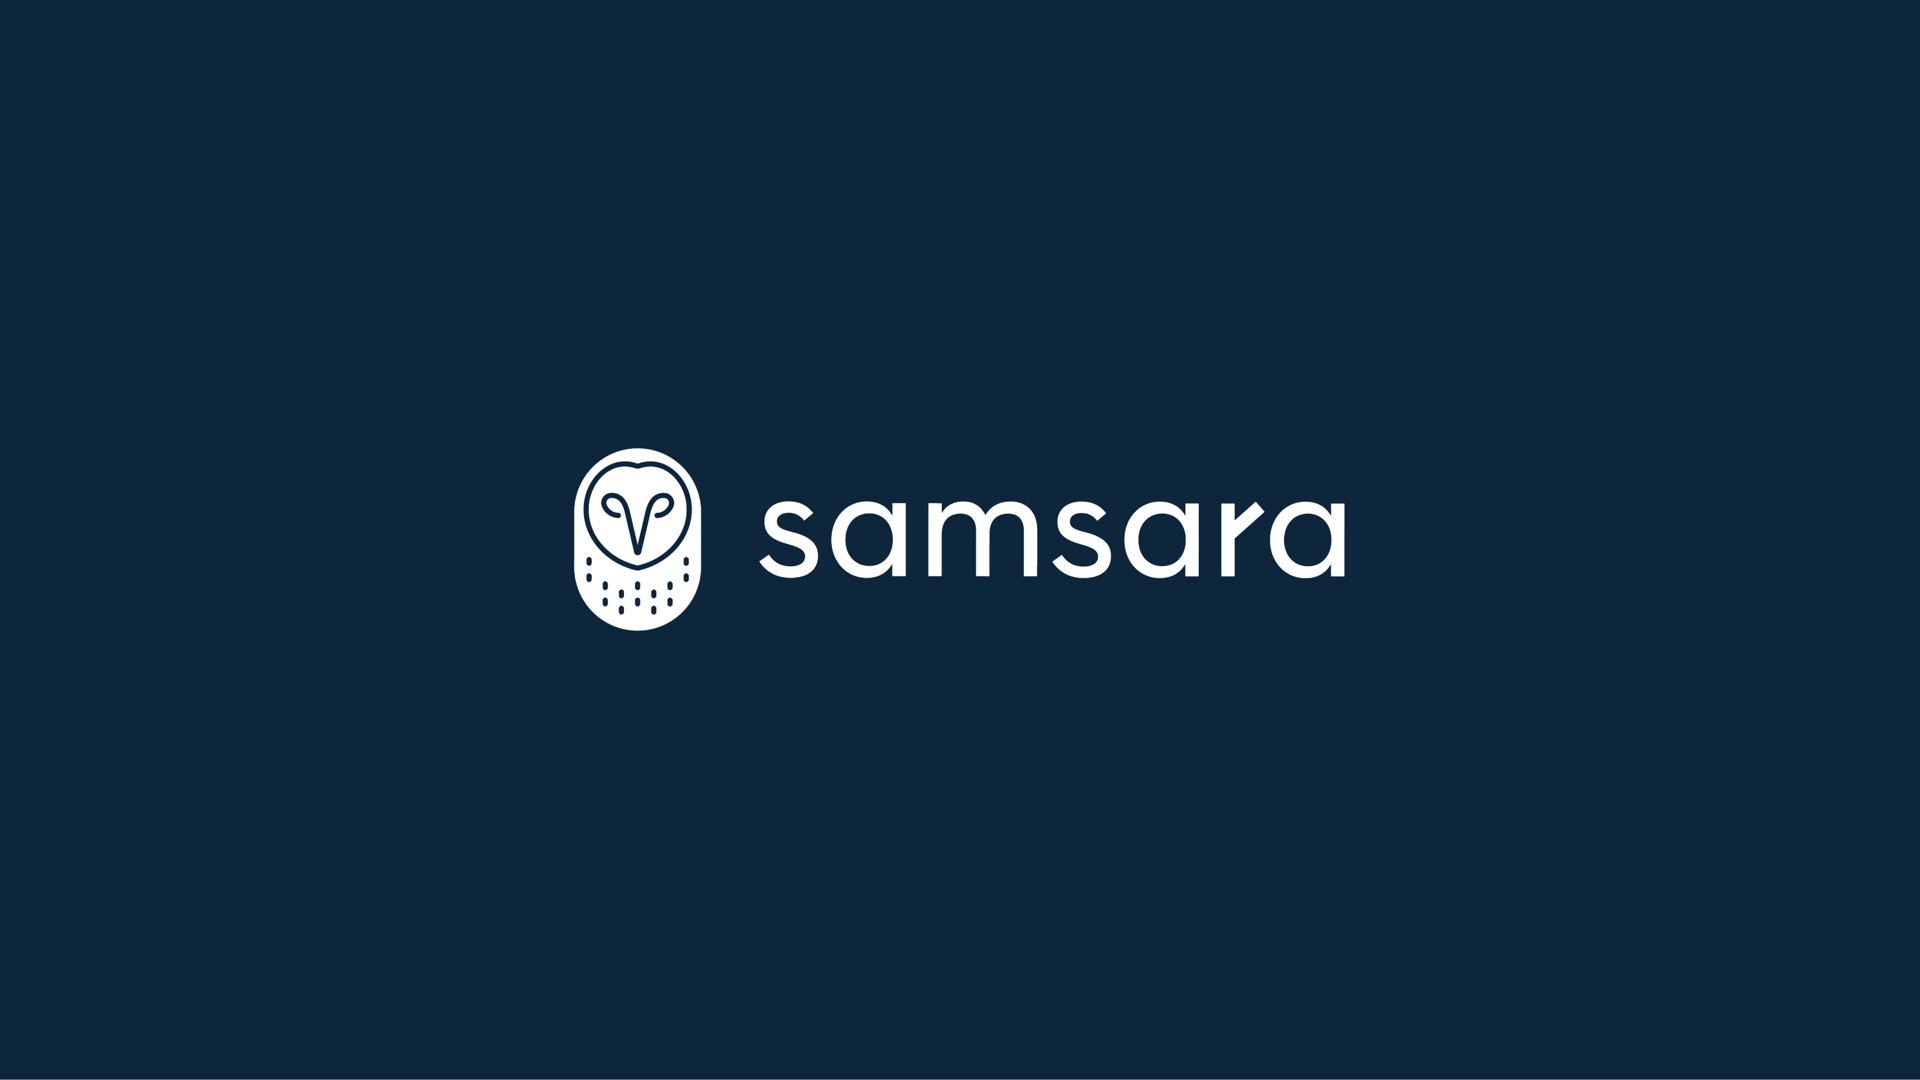 samsara | Samsara